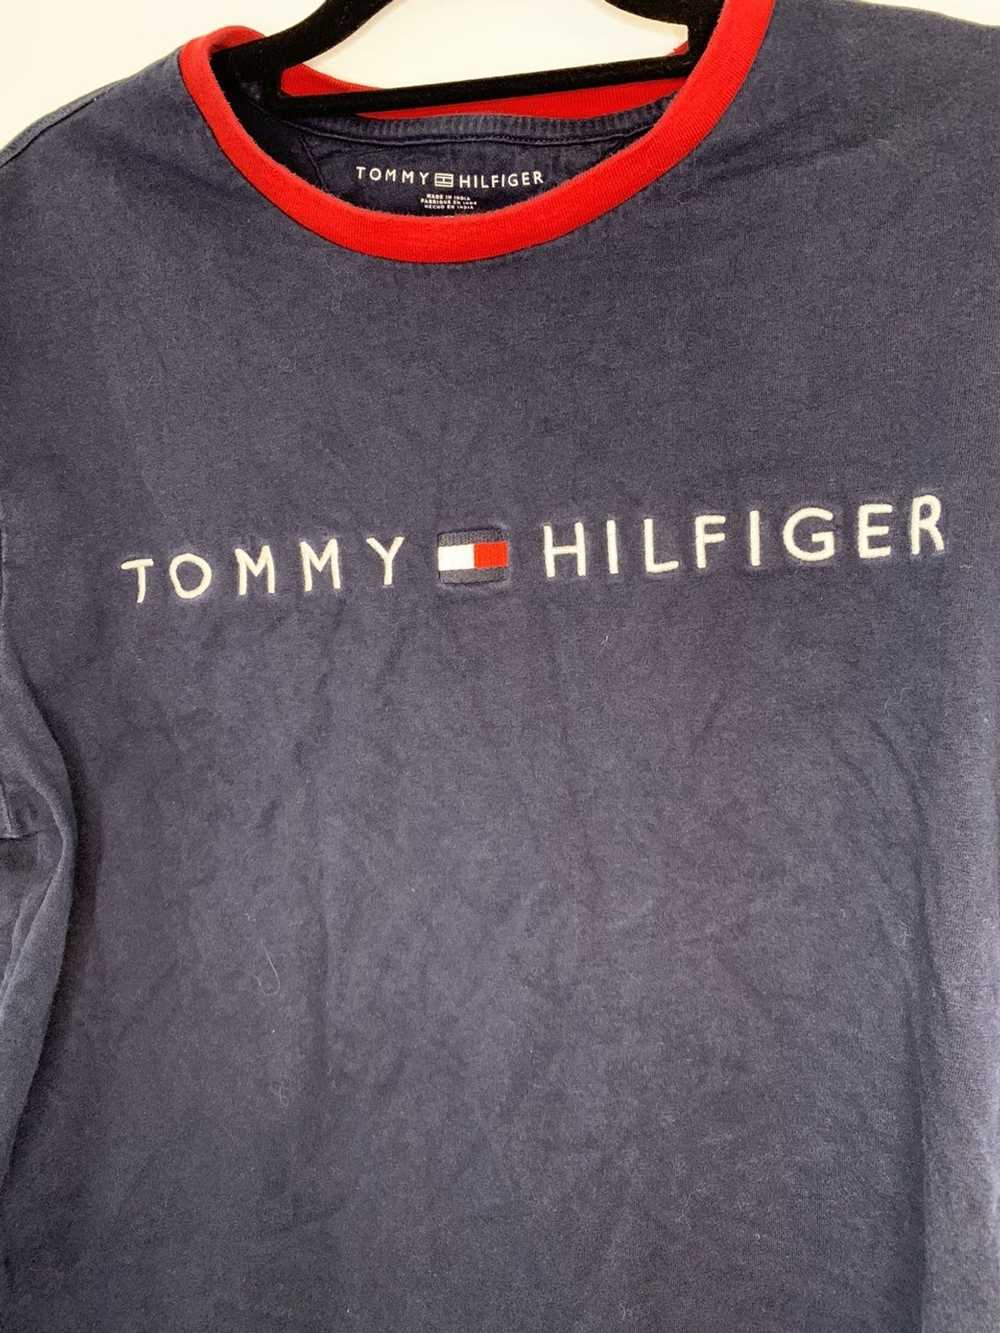 Tommy Hilfiger Tommy Hilfiger Navy Blue & Red Men… - image 2